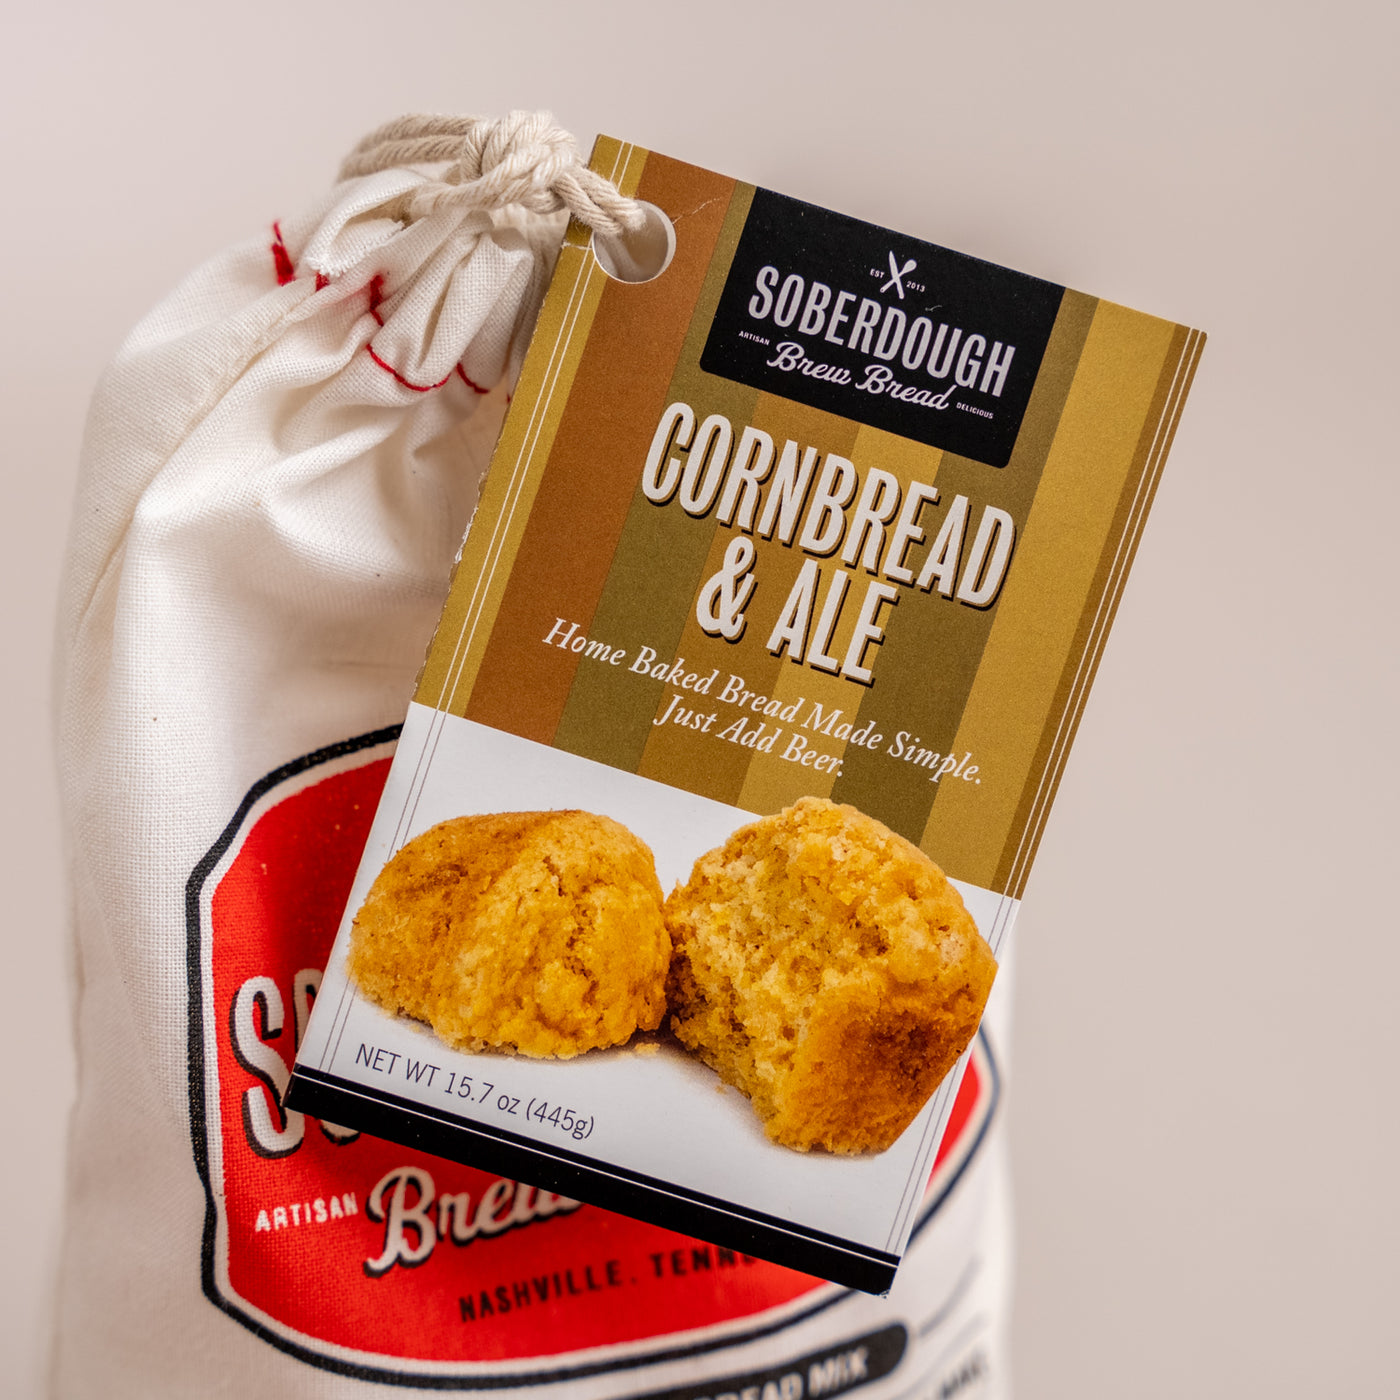 Soberdough - Cornbread and Ale